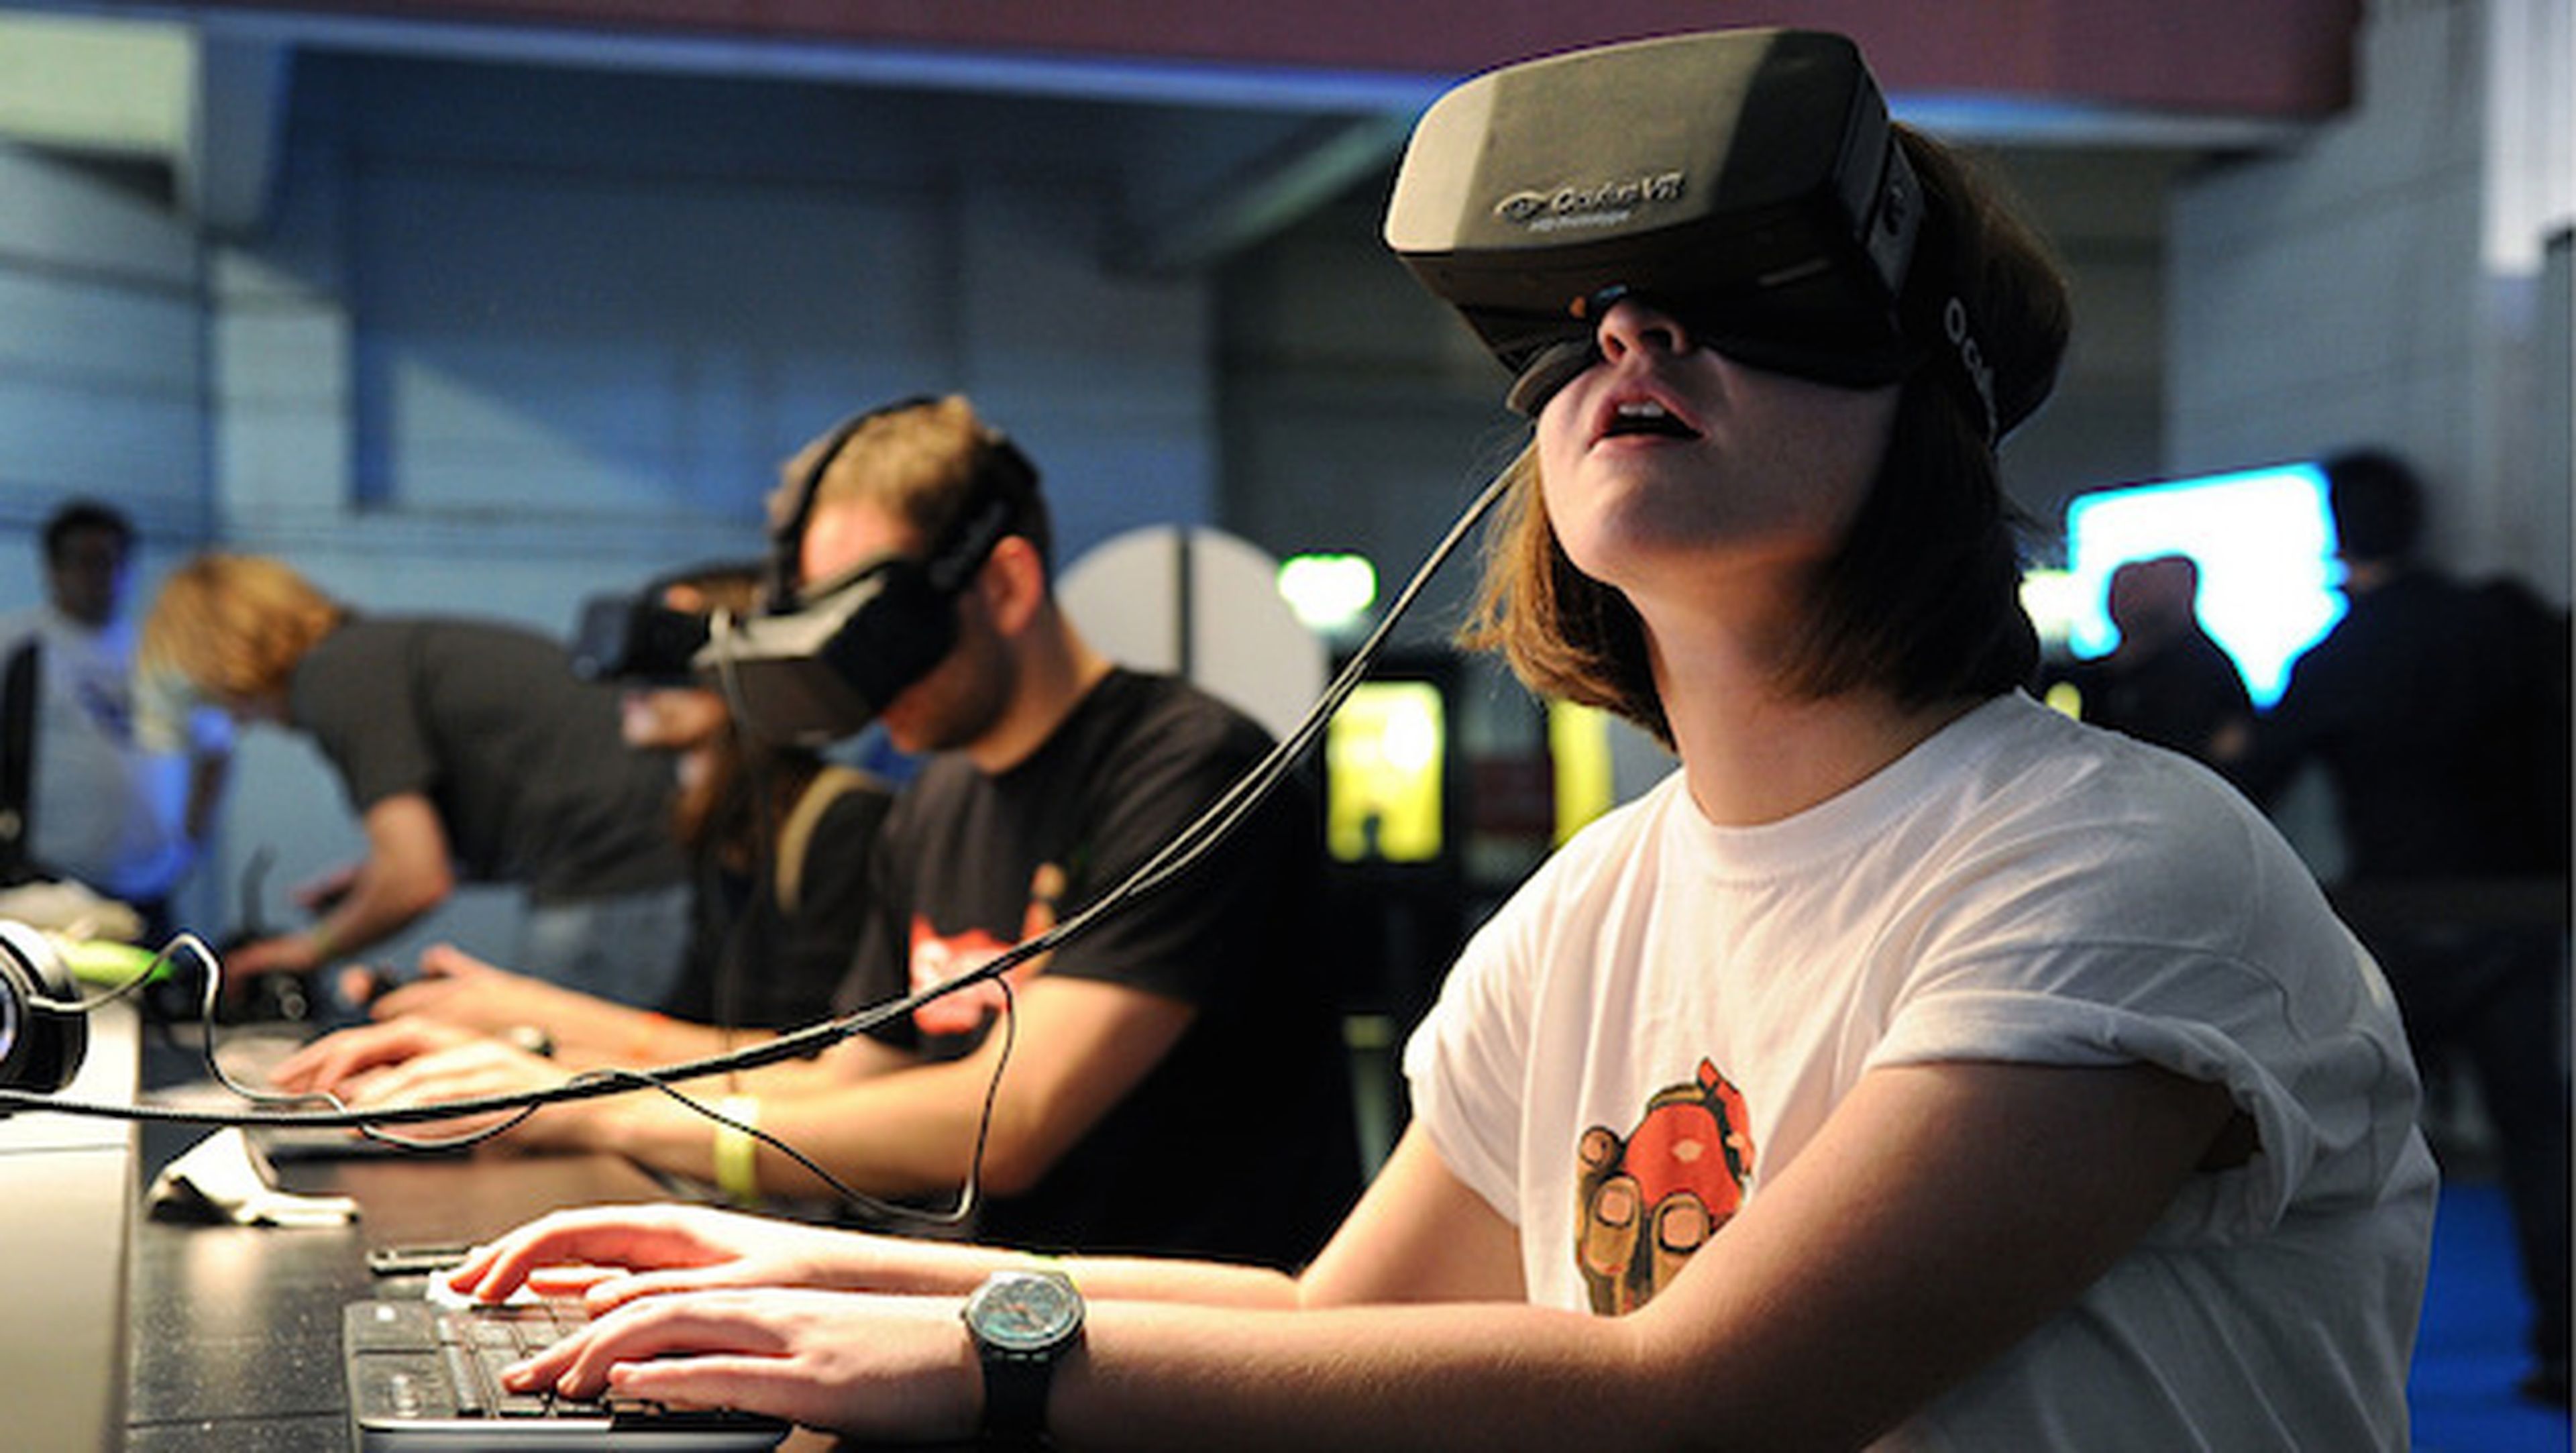 Oculus Rift costaría "al menos, 300 dólares" según su creador